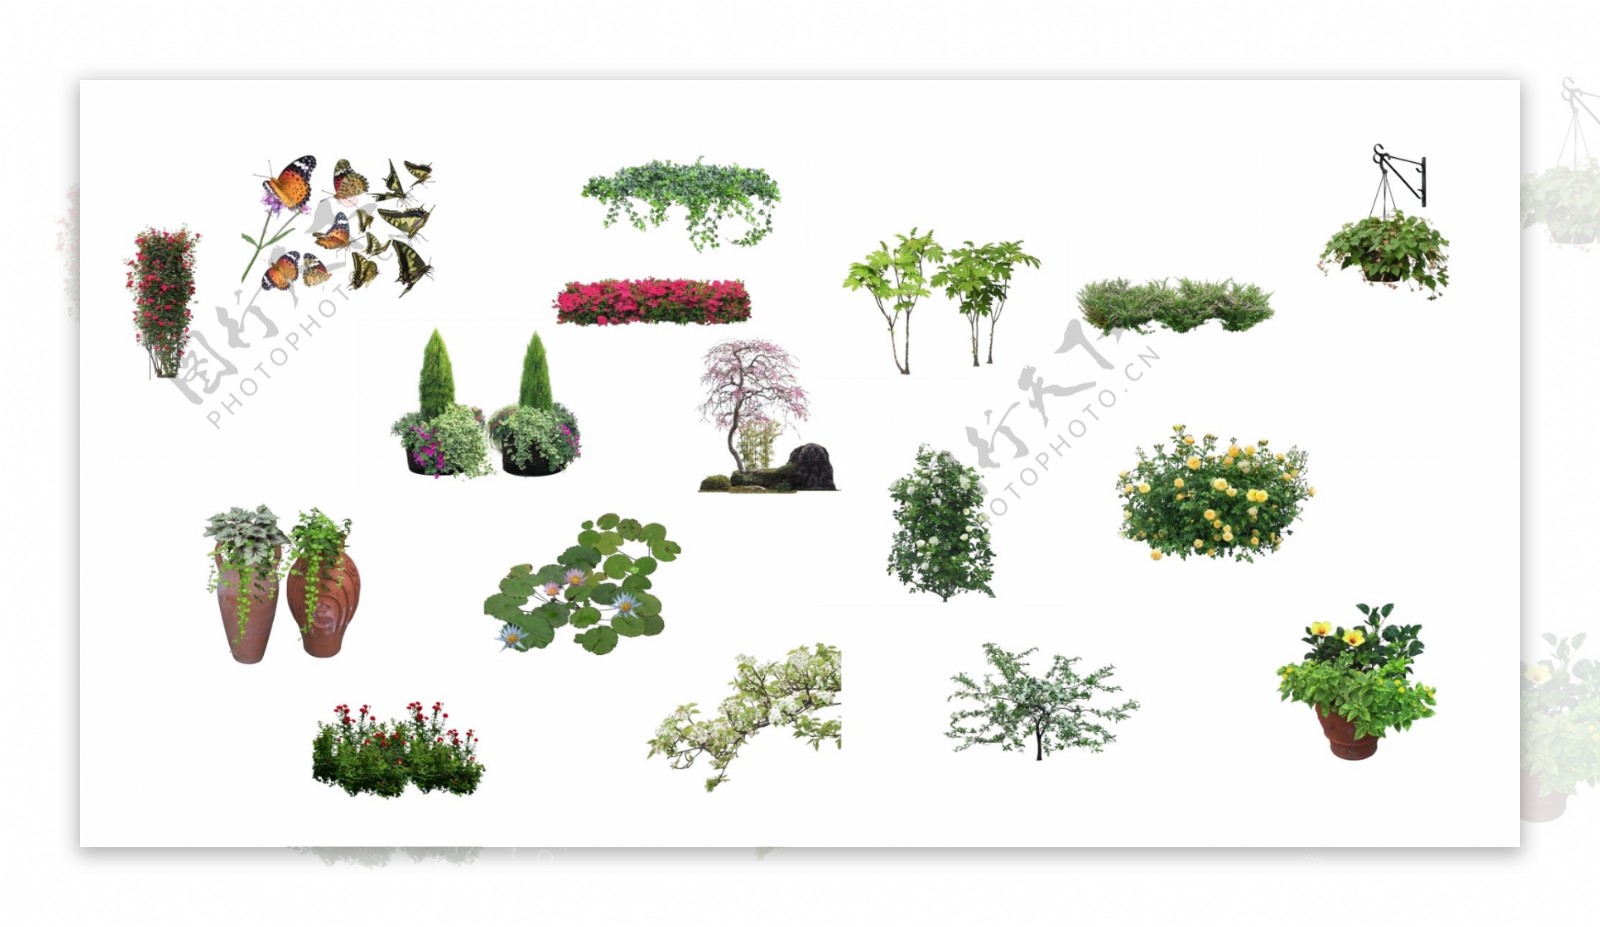 花灌木植物素材psd图片